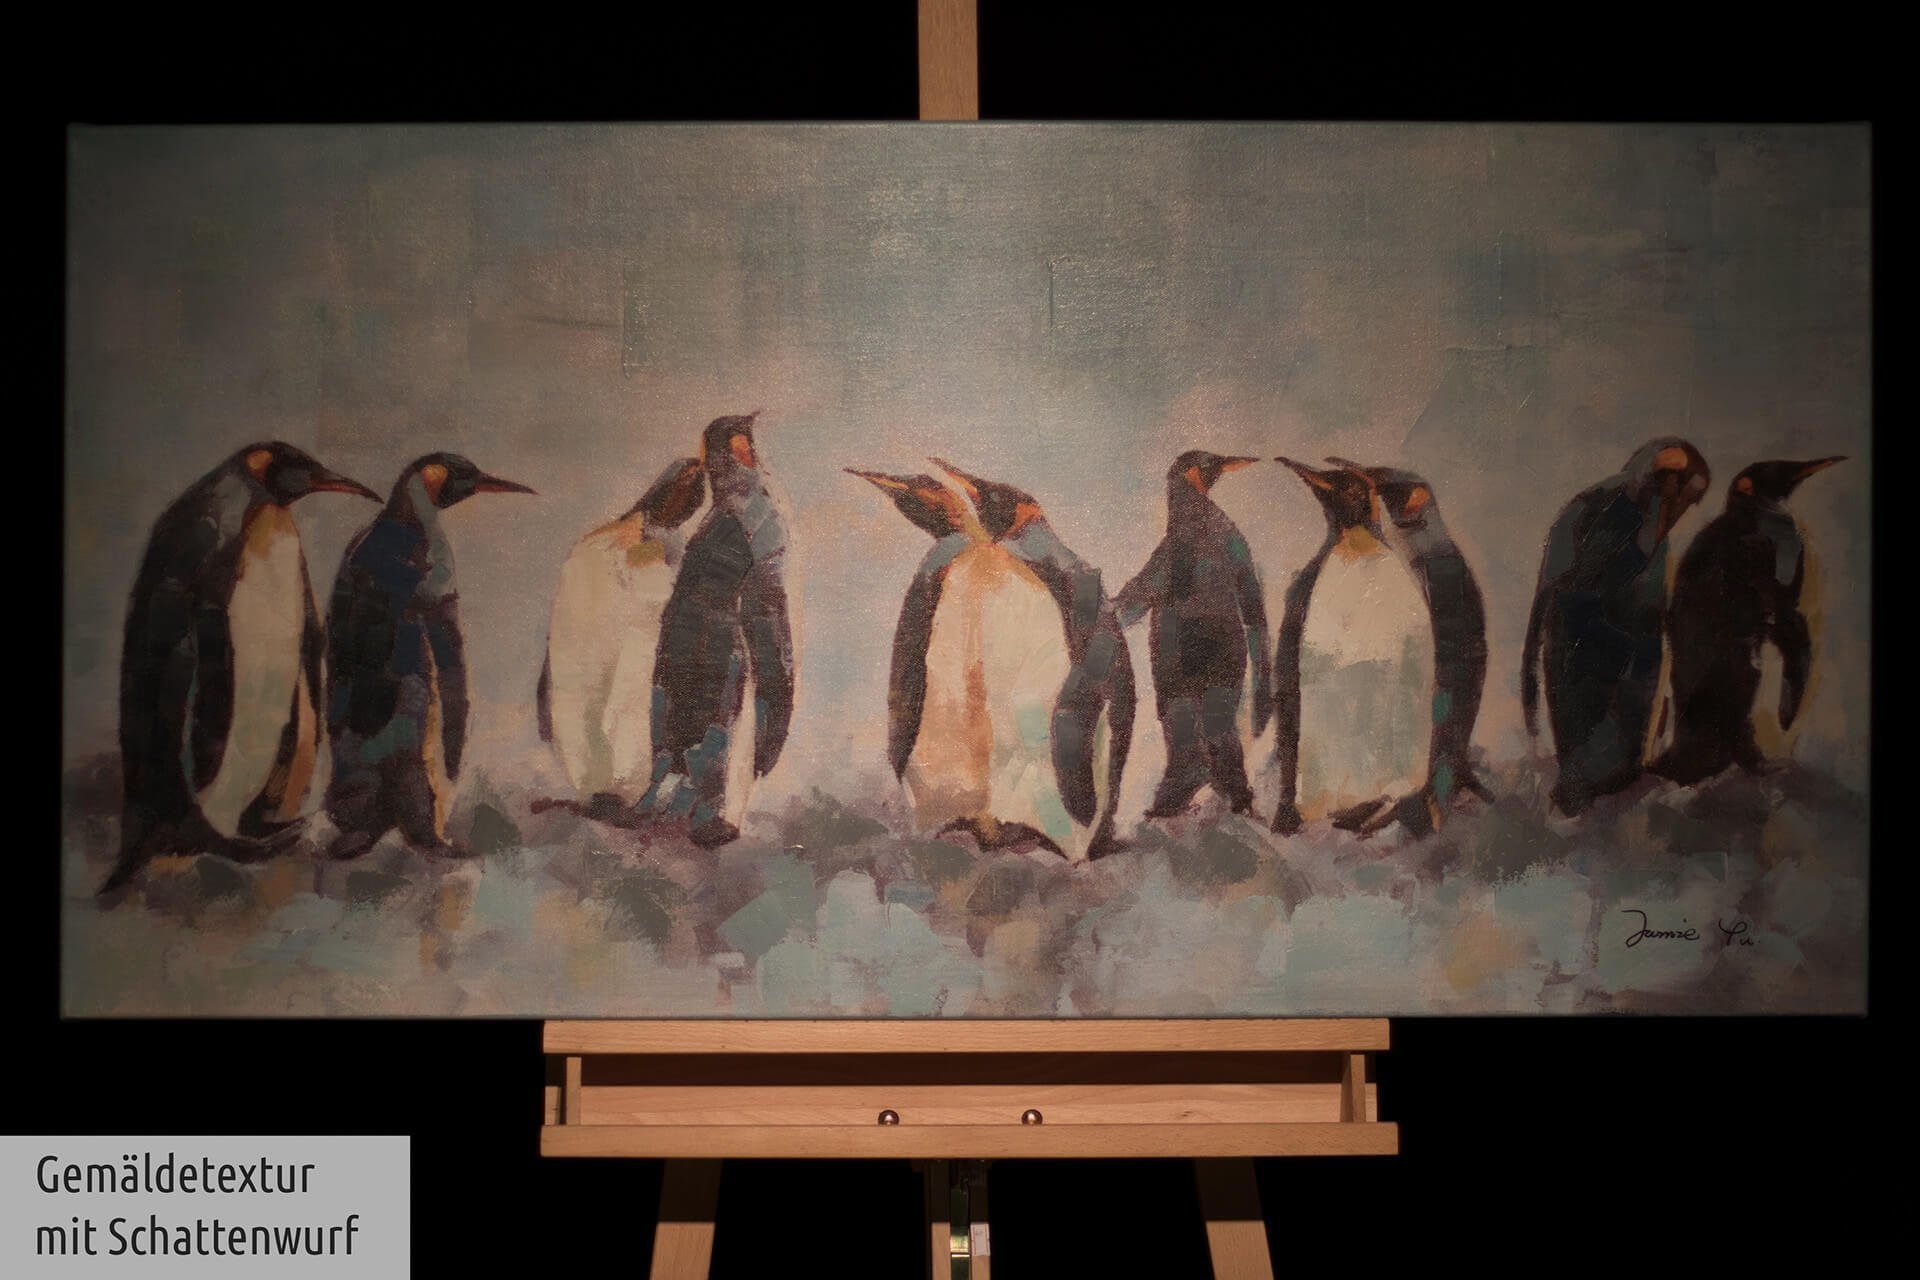 KUNSTLOFT Gemälde Kreis 120x60 der Leinwandbild cm, Pinguine Wandbild 100% HANDGEMALT Wohnzimmer